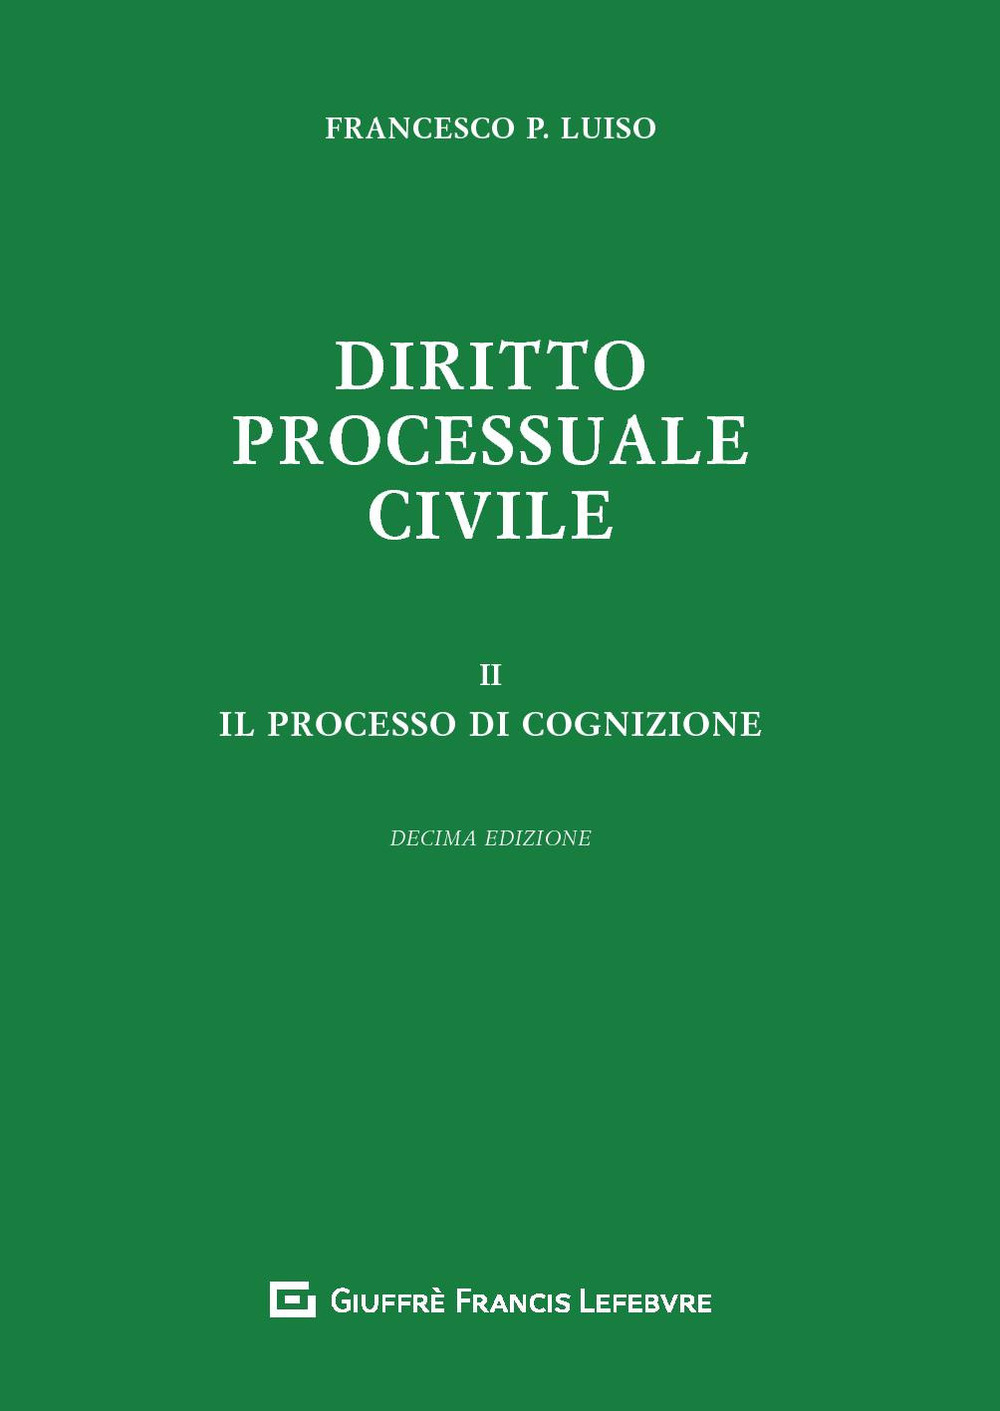 Libri Luiso Francesco Paolo - Diritto Processuale Civile Vol 02 NUOVO SIGILLATO, EDIZIONE DEL 08/07/2019 SUBITO DISPONIBILE